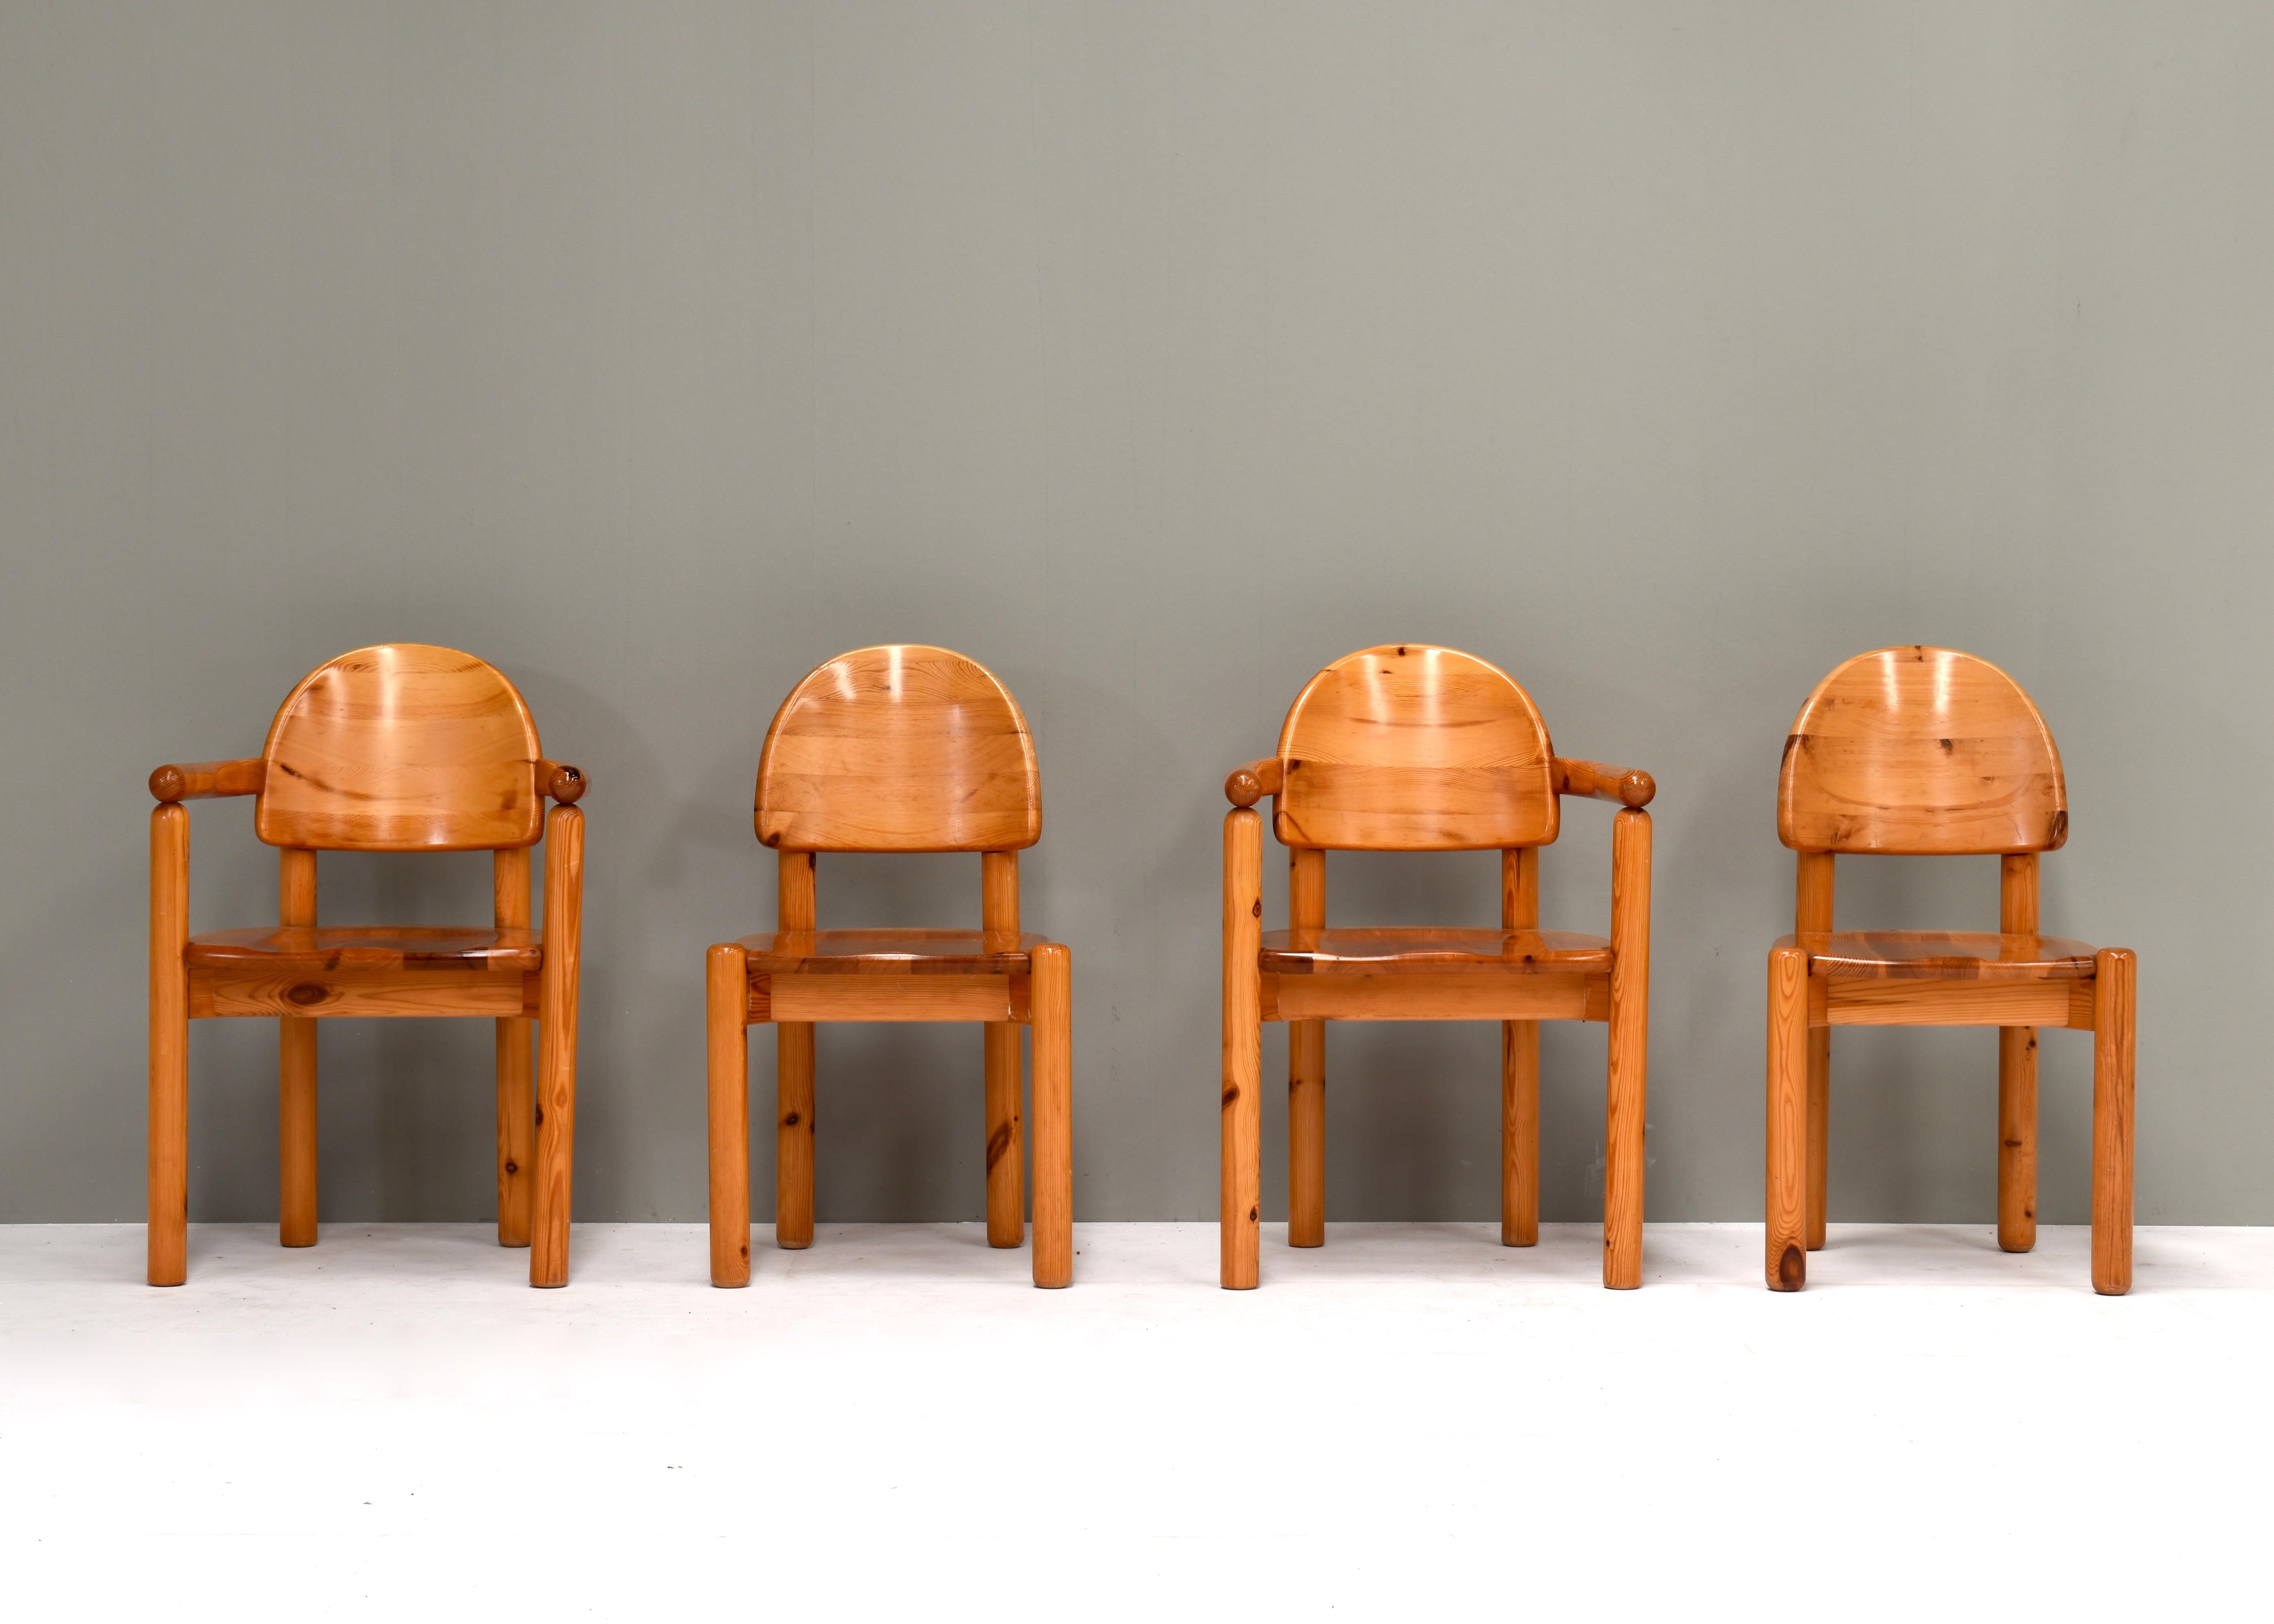 Rainer Daumiller Carver Stühle für Hirtshals Savvaerk, Dänemark, 1970er Jahre.
Sessel des dänischen Architekten Rainer Daumiller aus der Mitte des Jahrhunderts, hergestellt vom Sägewerk Hirtshals in den späten 1970er Jahren. Wir haben vier dieser